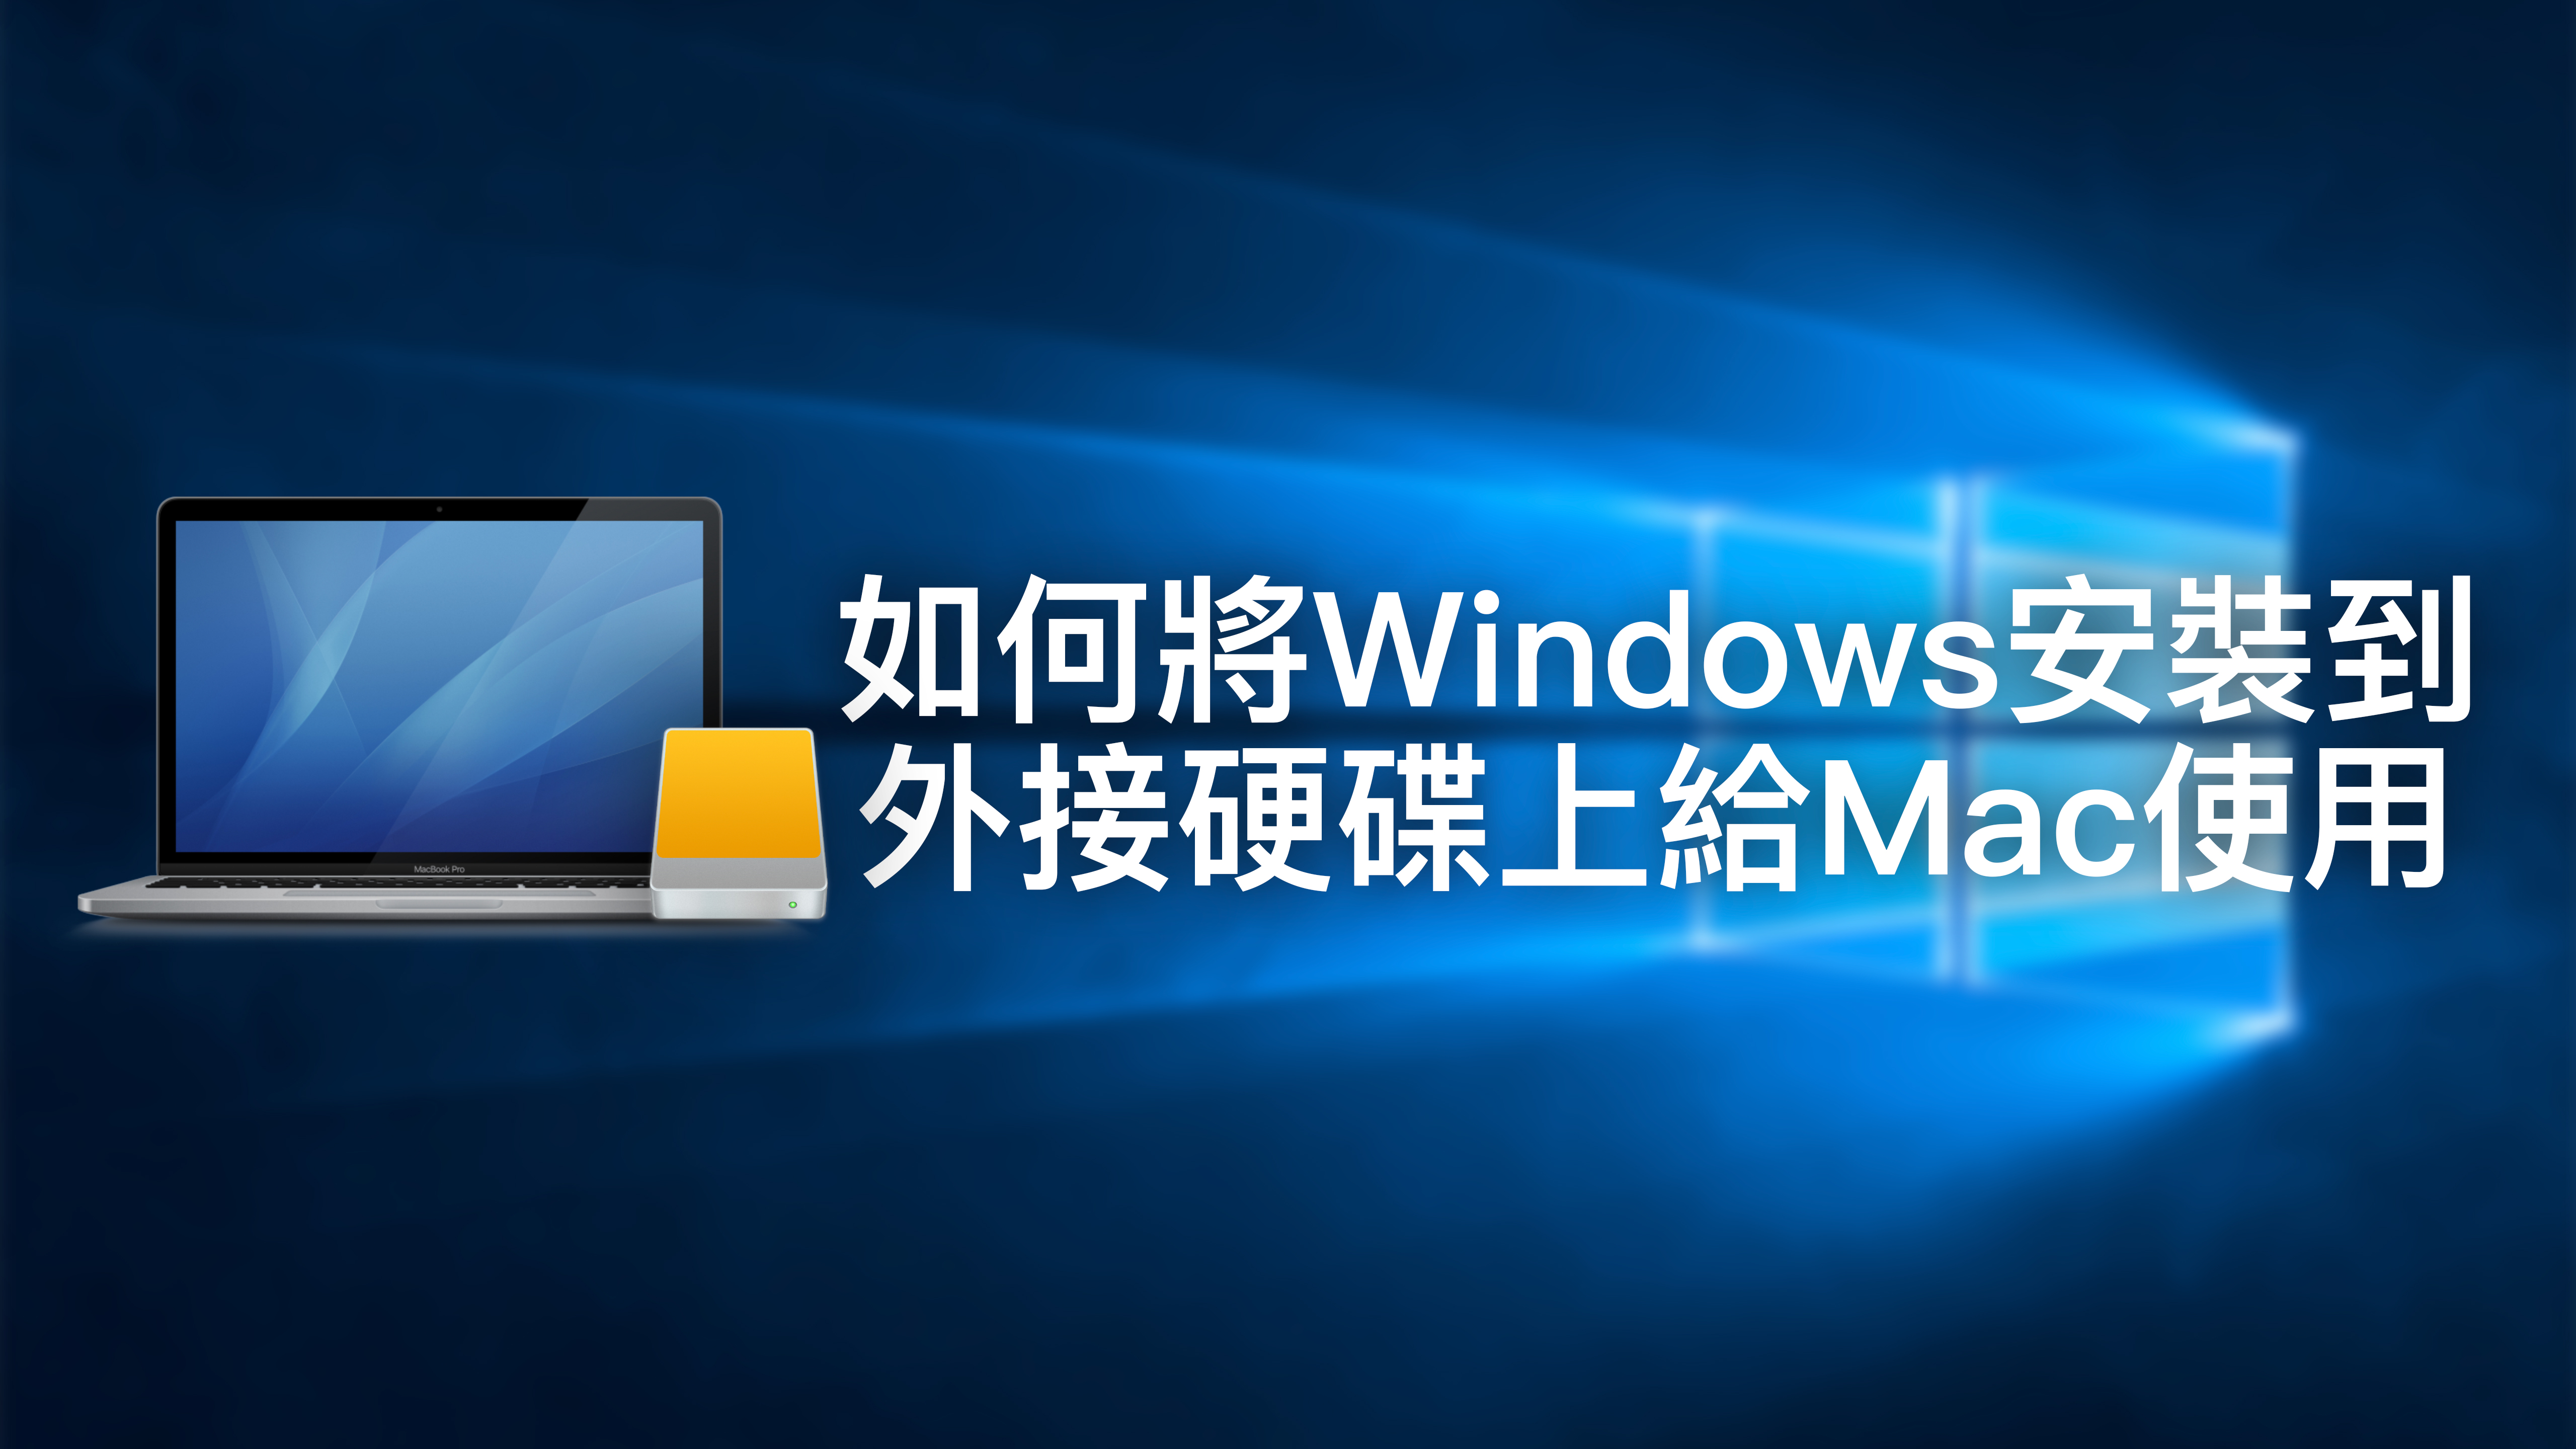 將Windows安裝到外接硬碟上給Mac使用